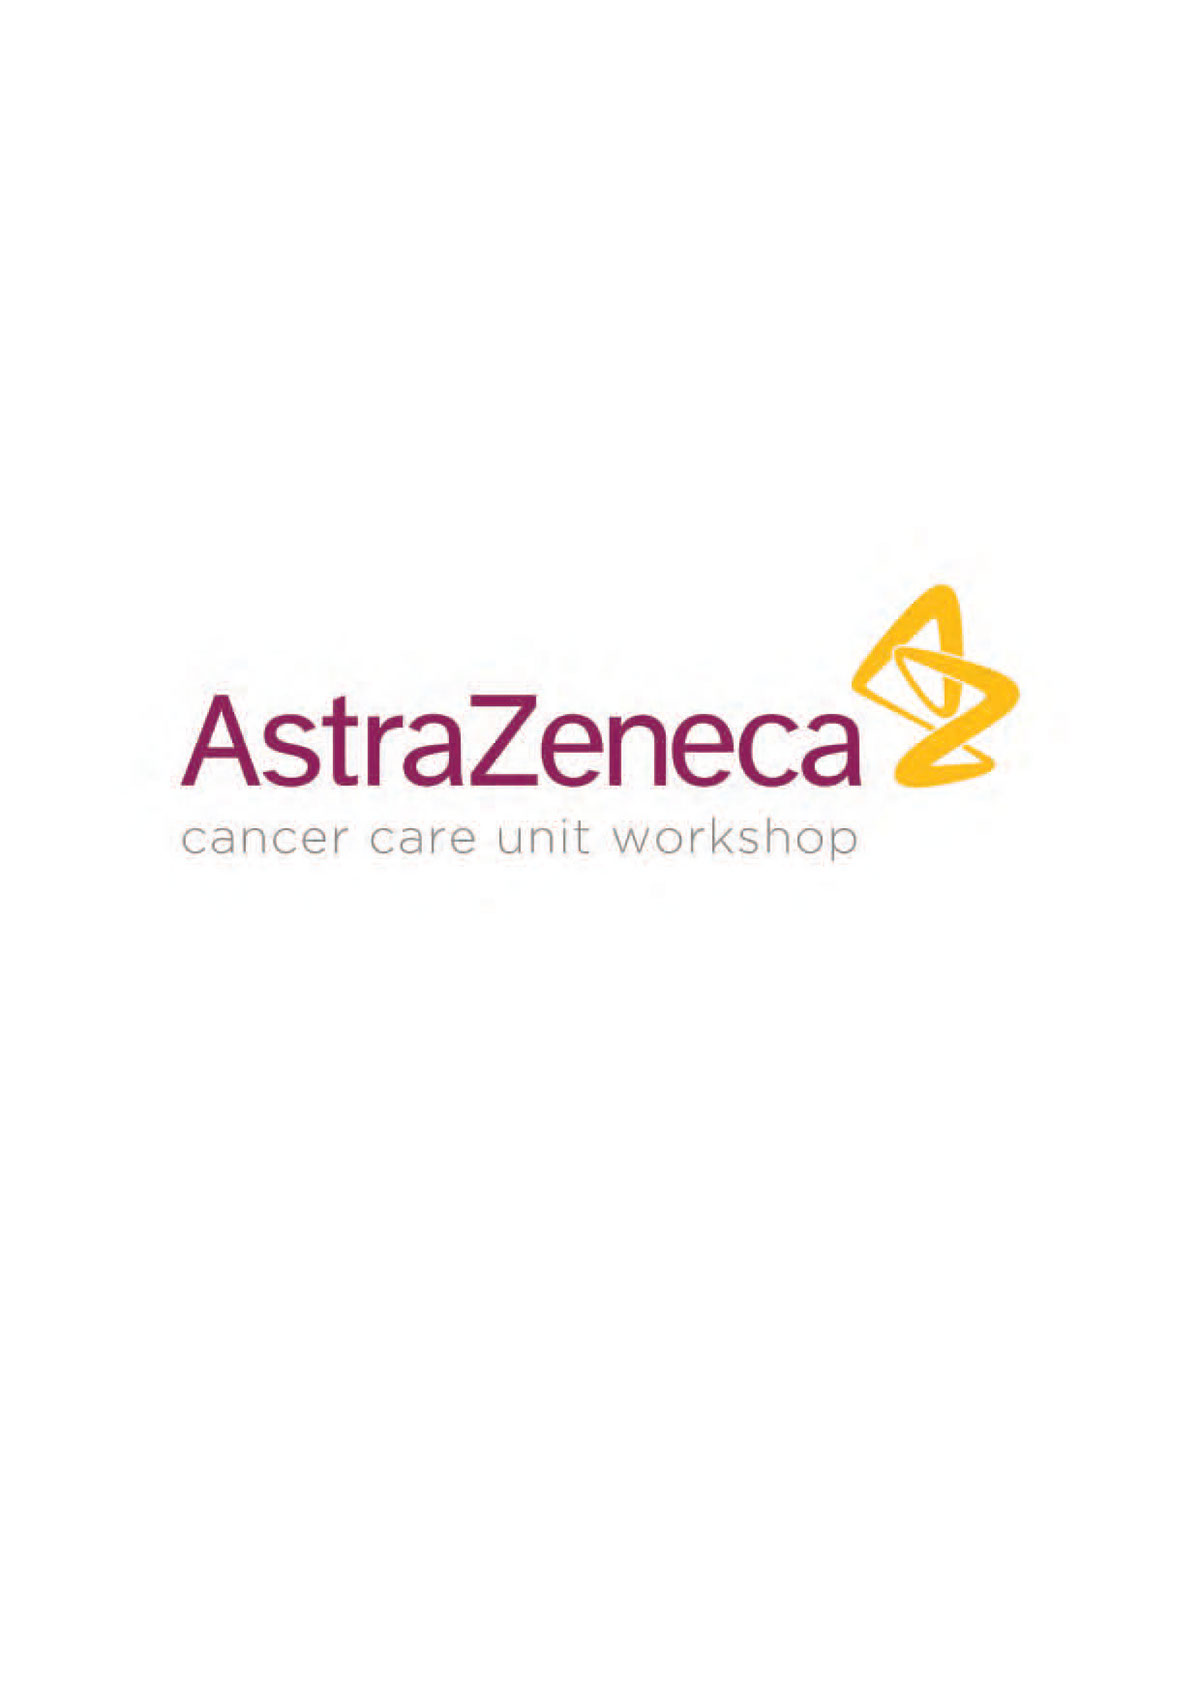 astrazeneca Oncology Umbrella